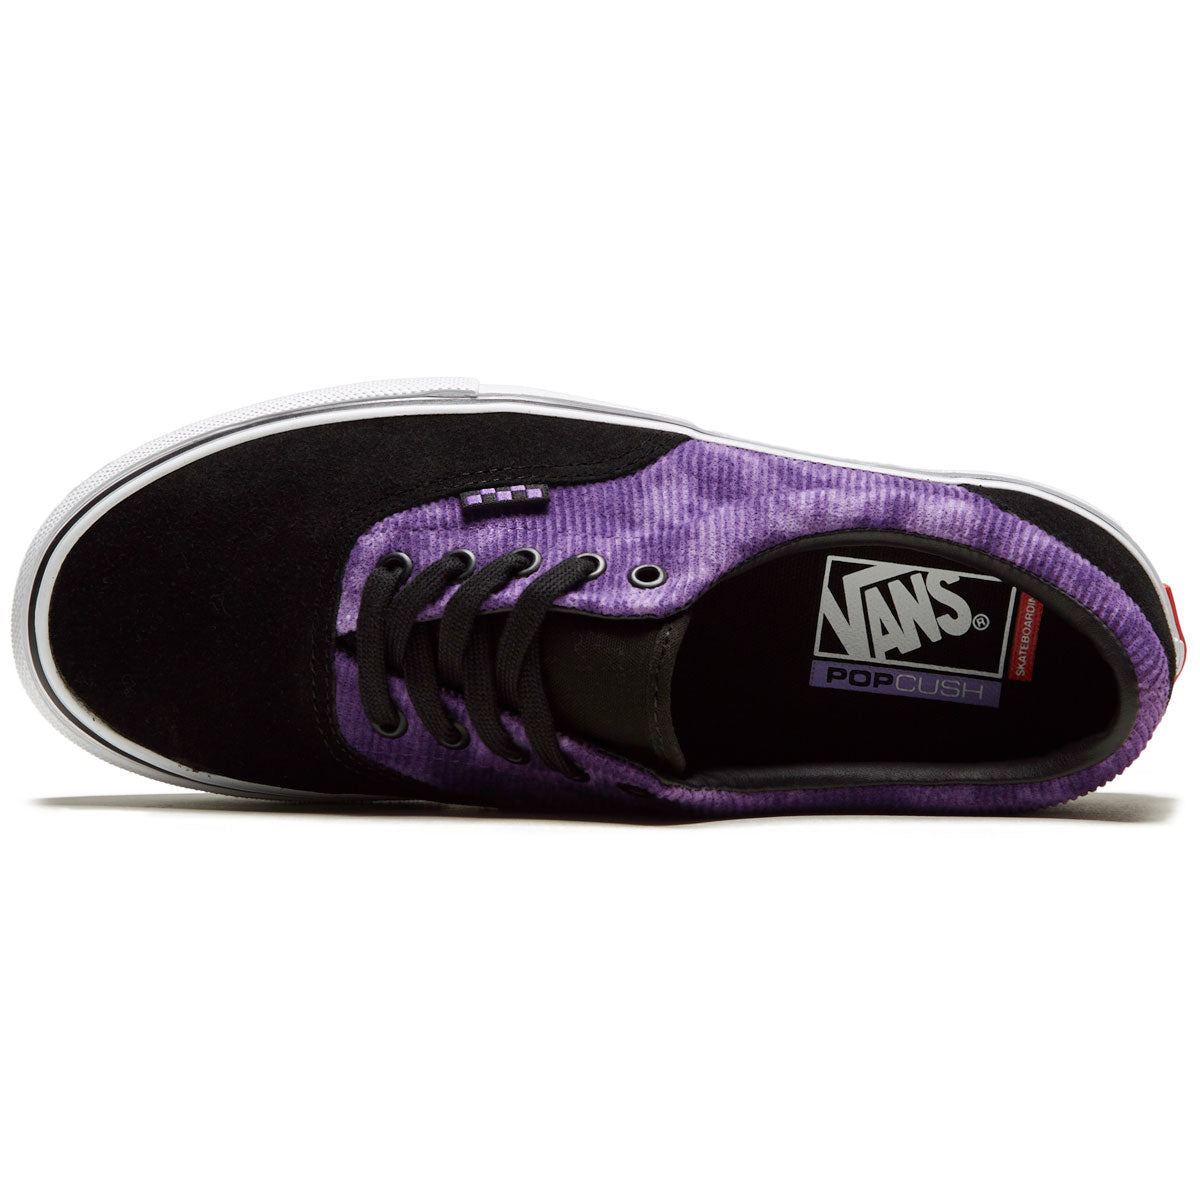 Vans Skate Era Shoes - Tie-dye/Black/White – CCS